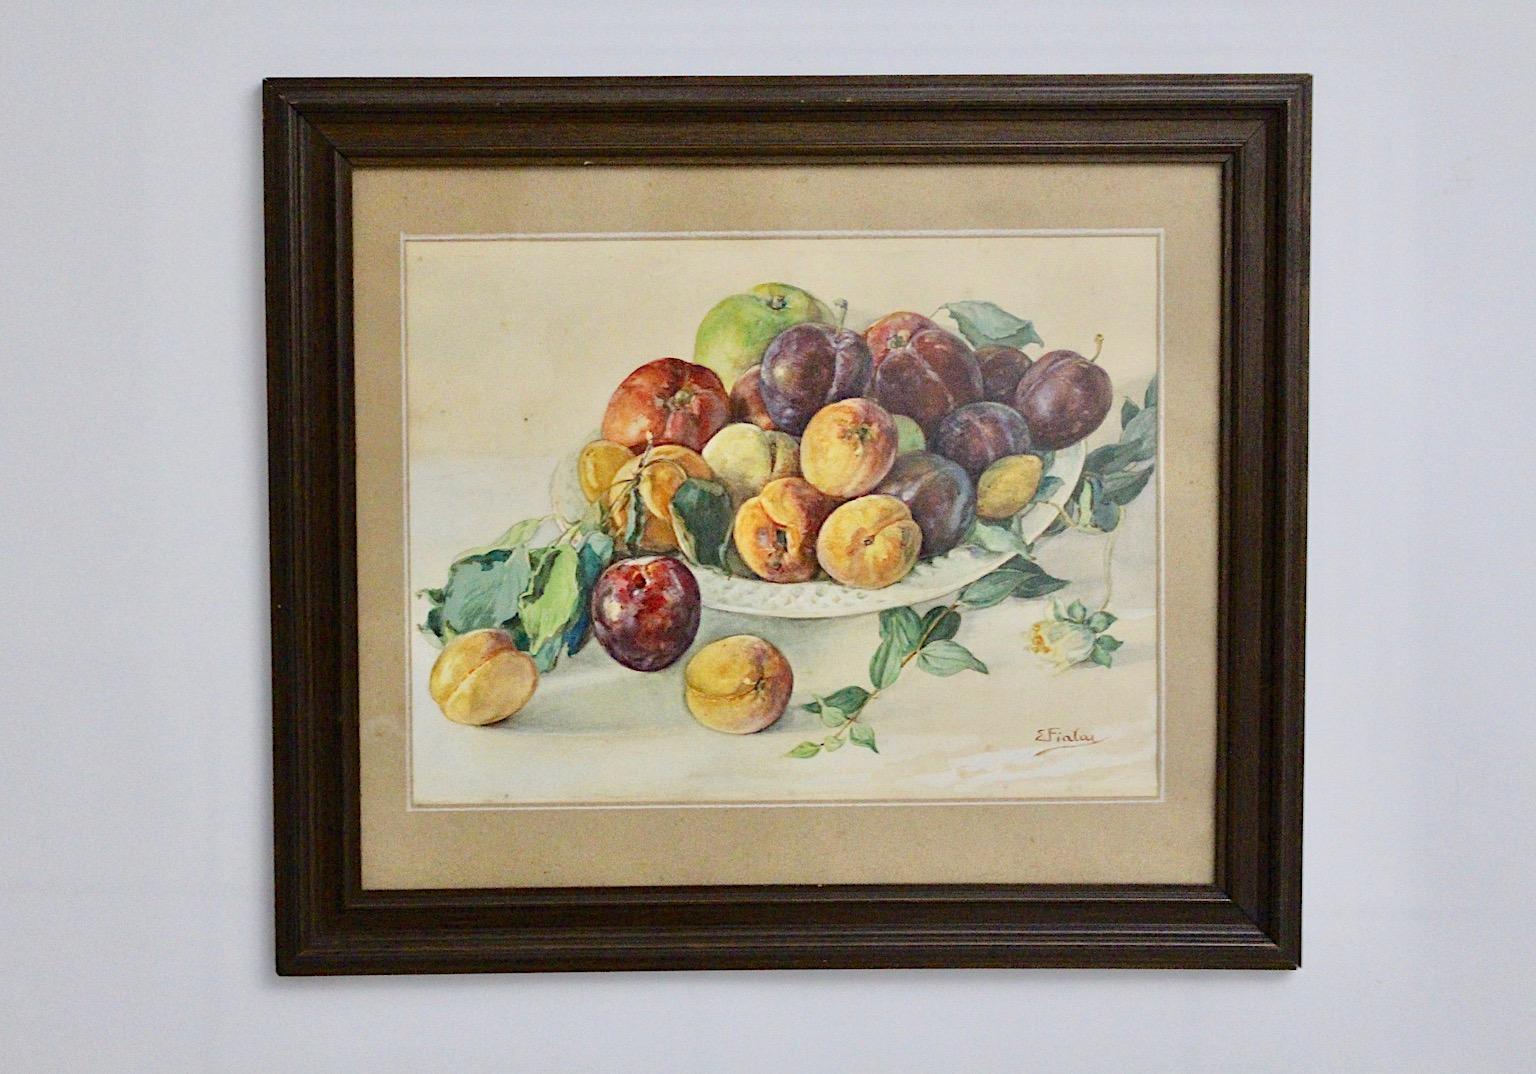 Ein Gemälde mit dem Motiv Früchte in einer Schale gemalt, das mit Aquarellfarben von Emil Fiala gemalt wurde.
Emil Fiala (1869-1960) war von 1915-1937 Mitglied des Österreichischen Künstlerbundes, ehemals Hagenbund.
Ein schlichter brauner